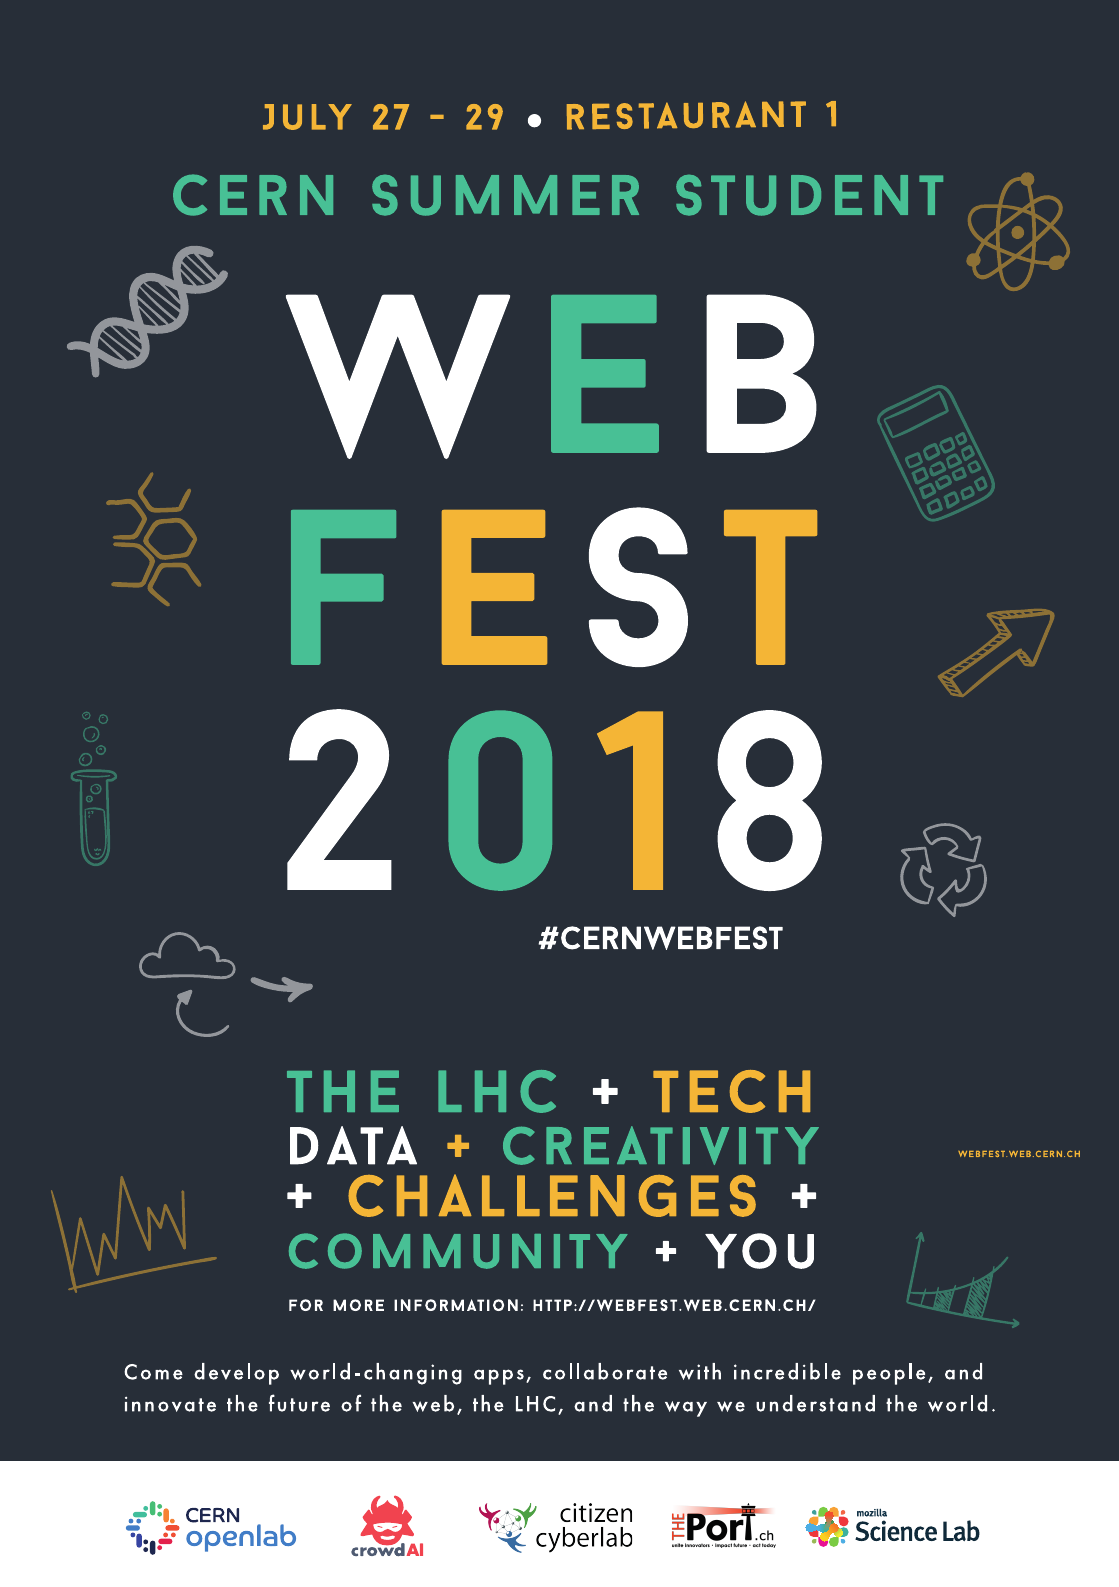 Le Webfest des étudiants d'été : entre science et créativité